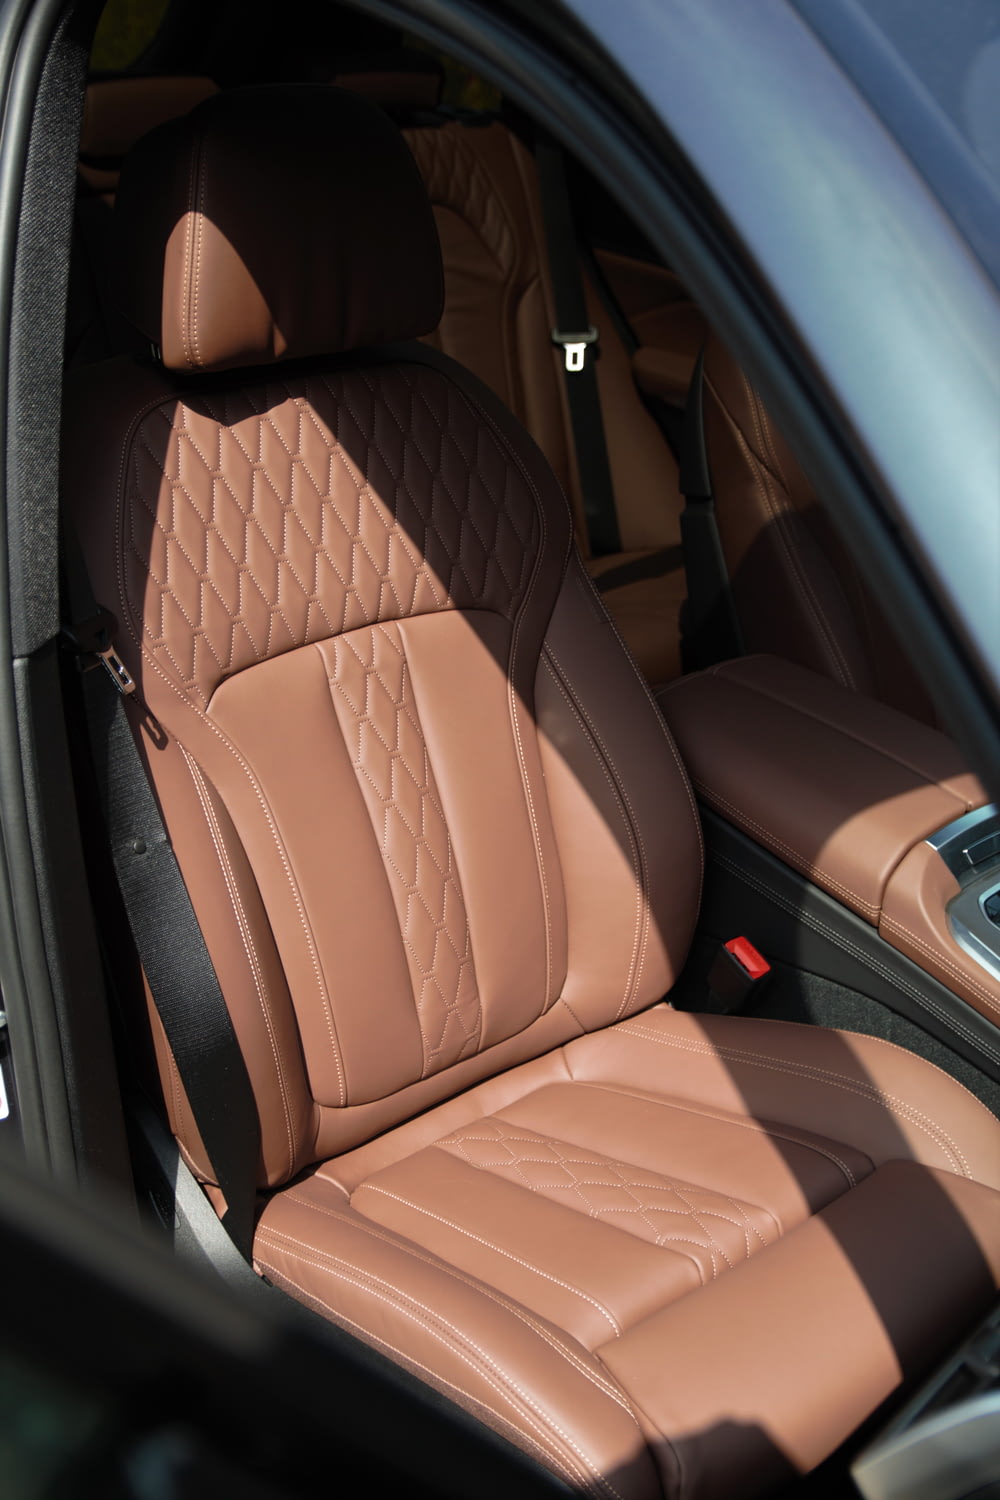 brauner Leder-Autositz im Auto